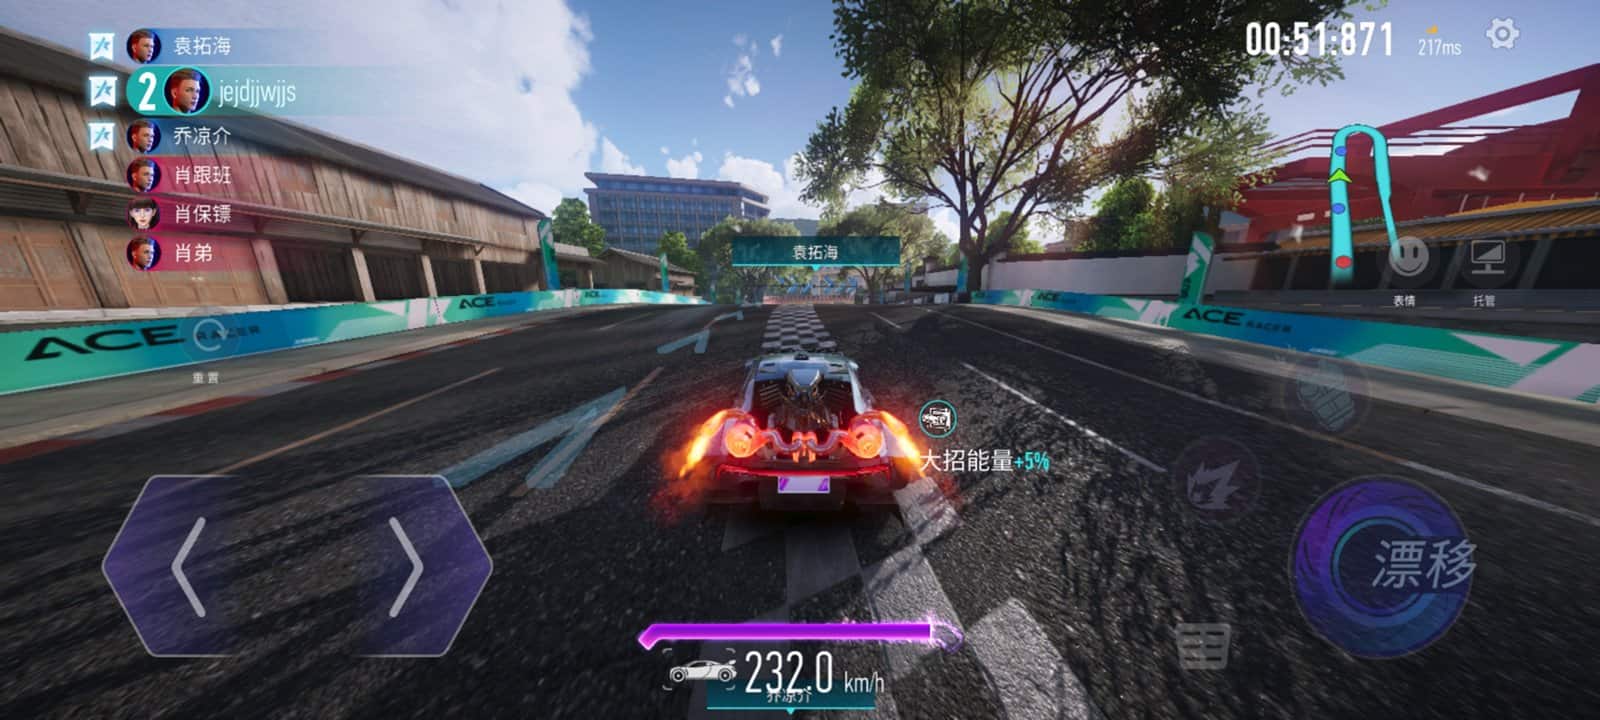 ace-racer-android-gameplay Ace Racer: como jogar o novo game de corrida para Android